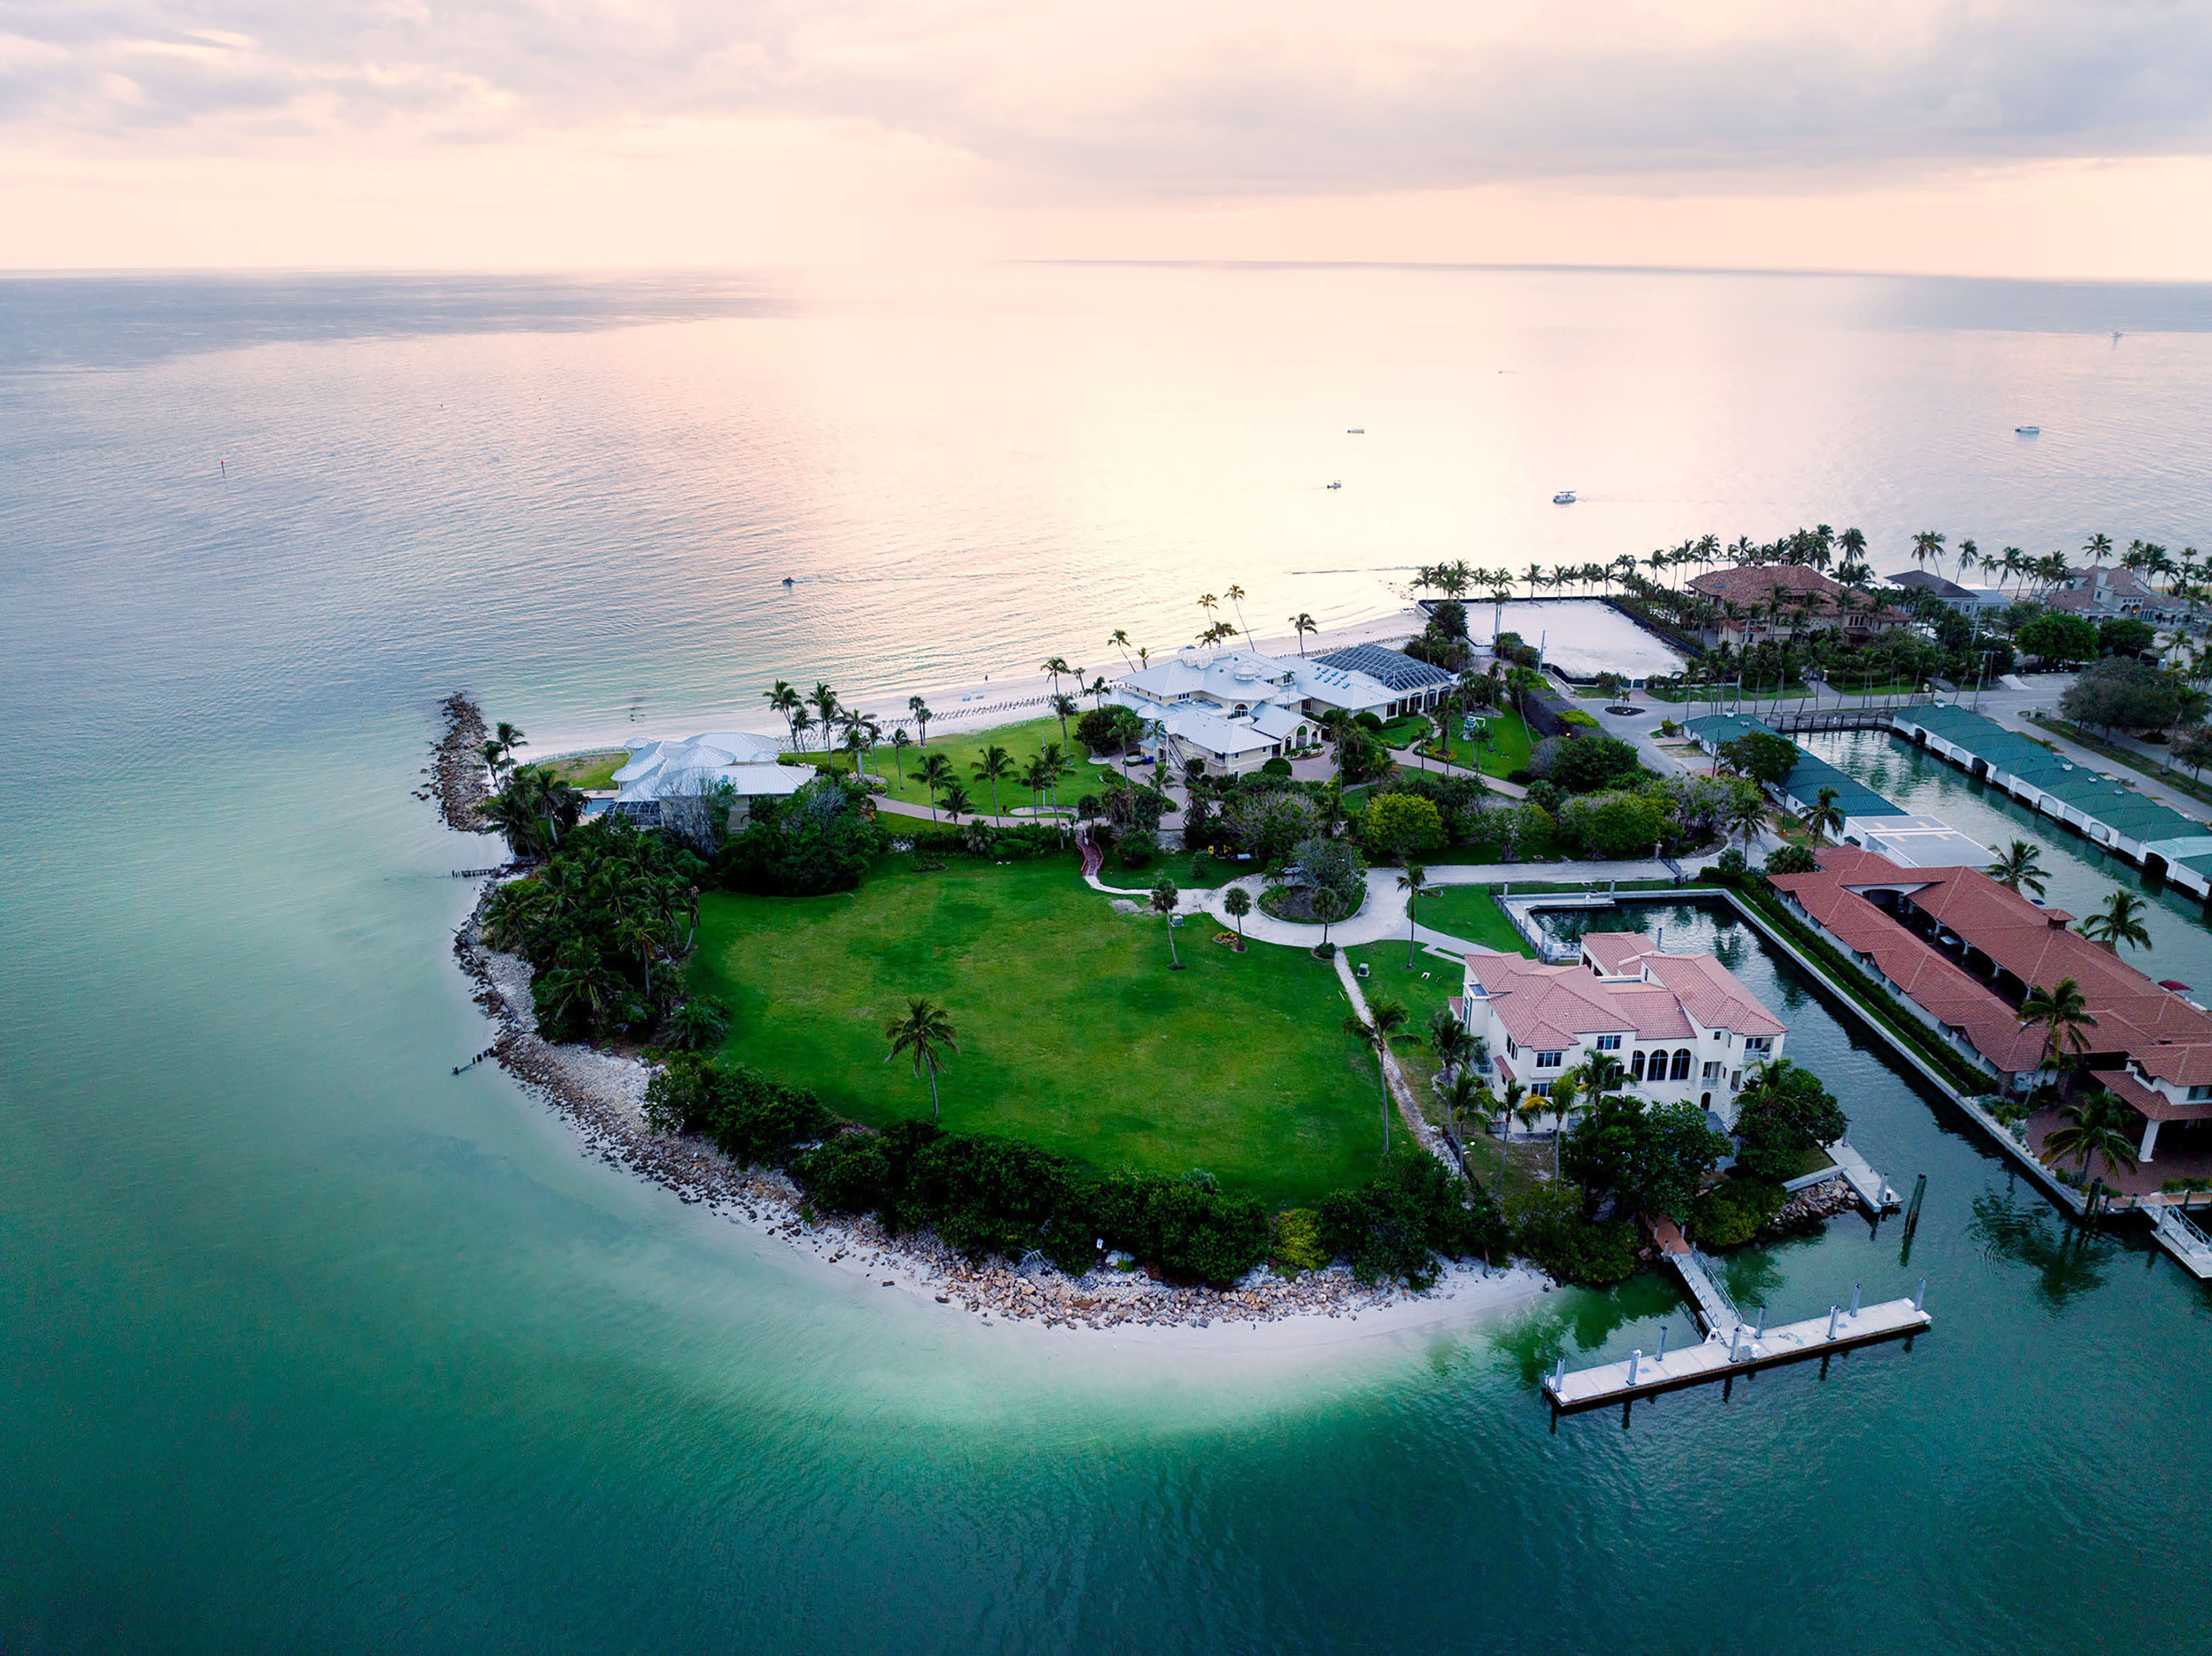 Het landhuis in Florida is het duurste huis dat te koop staat in de Verenigde Staten, met een prijs van $ 295 miljoen